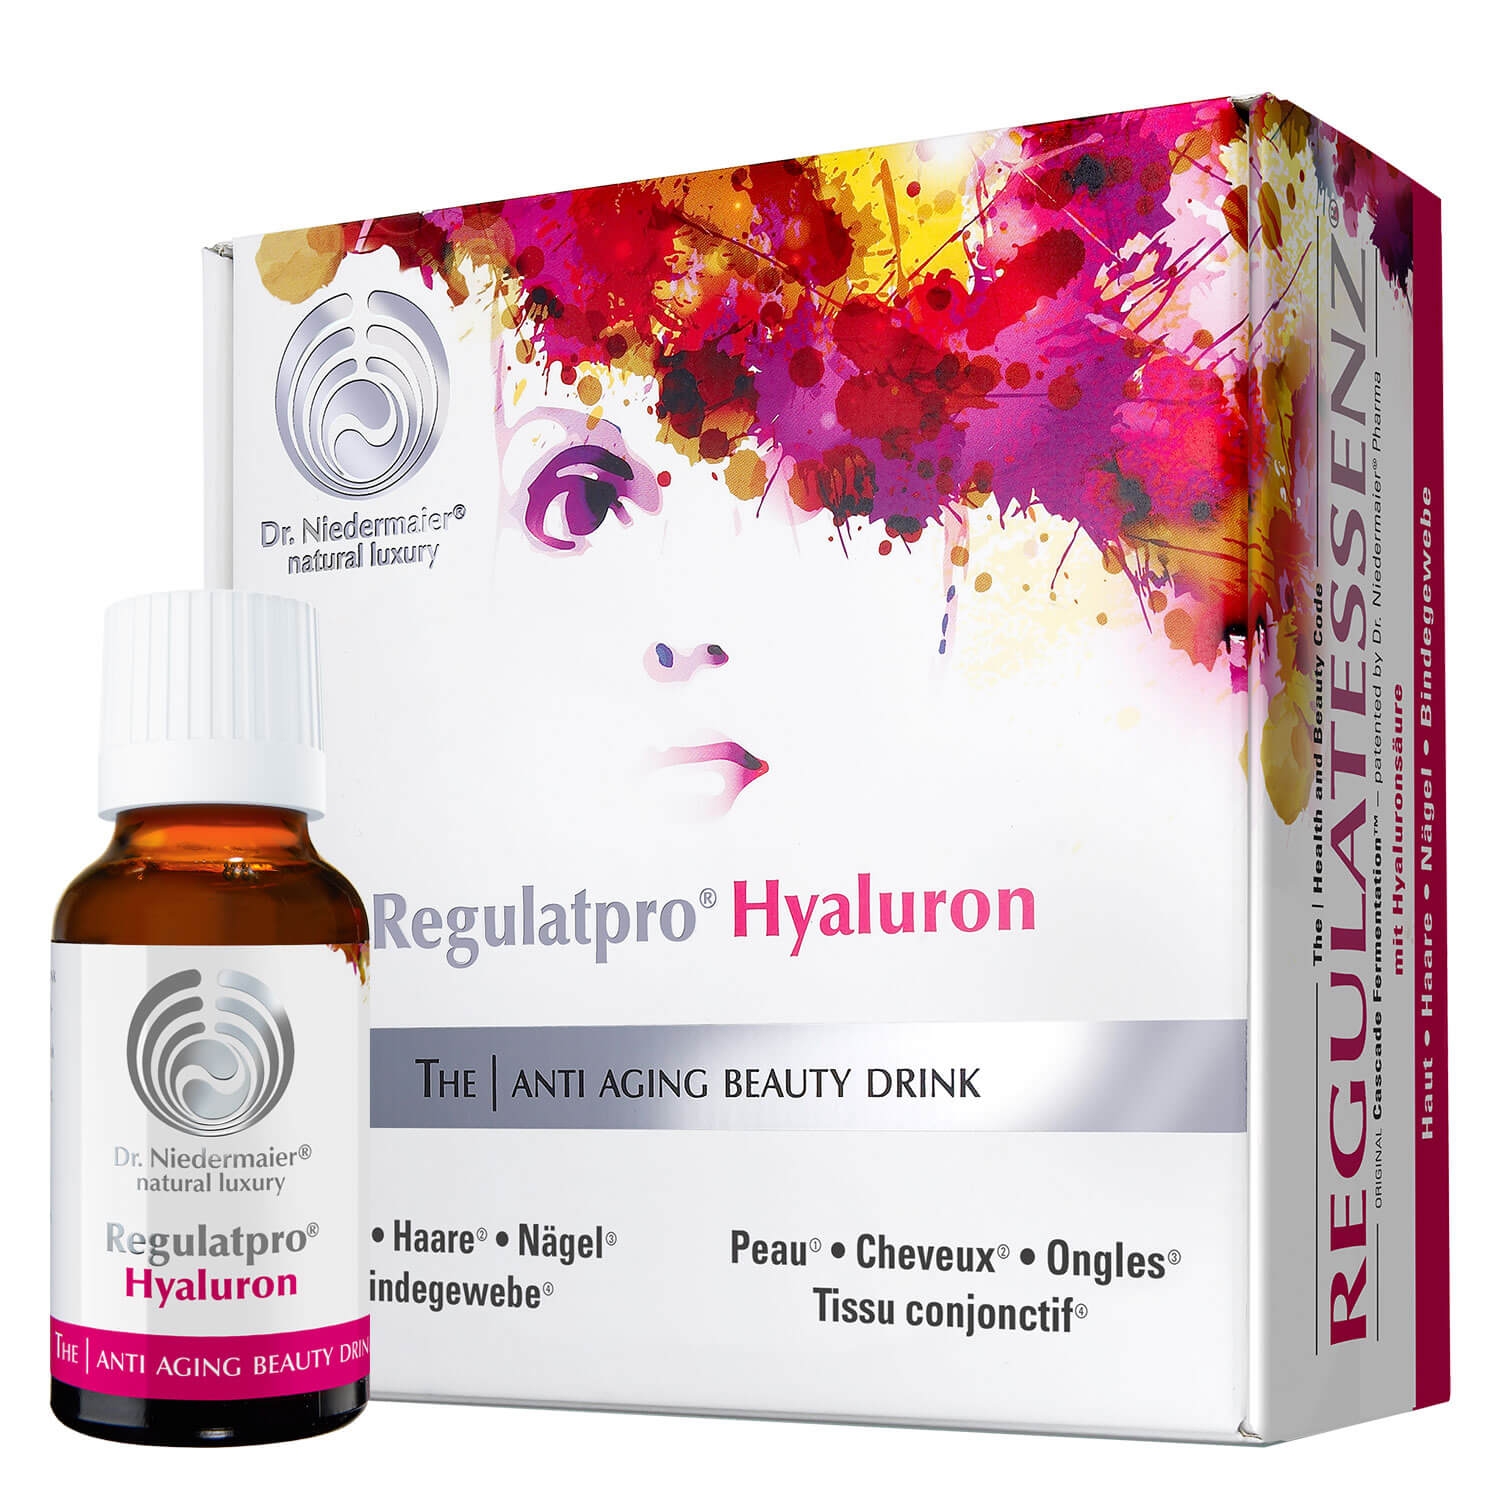 Produktbild von Regulatpro® - Hyaluron